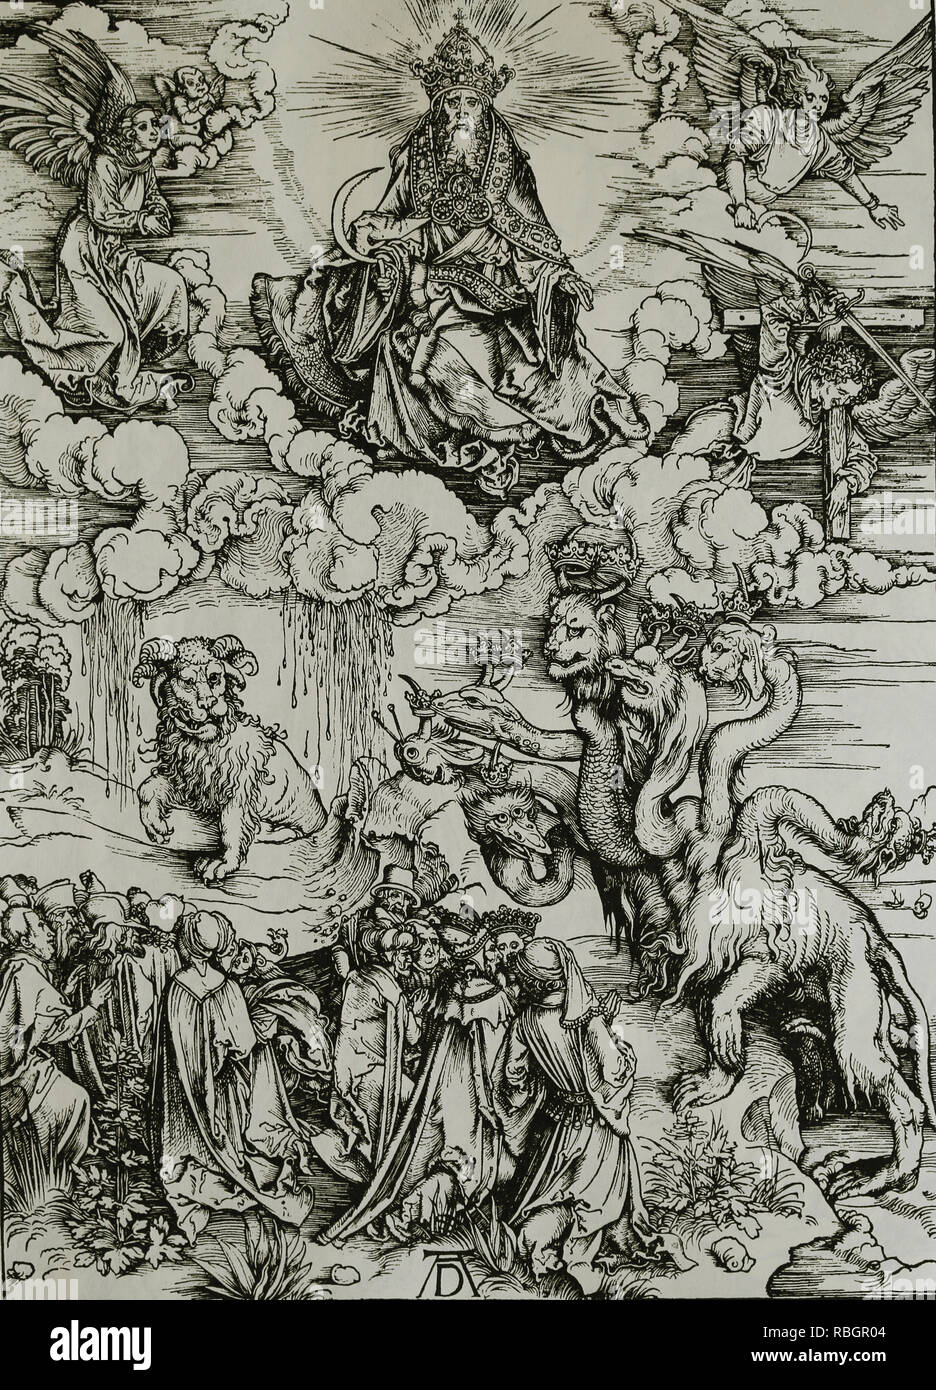 Das Tier mit den Hörnern des Lammes und das Tier mit 7 Köpfen. Apokalypse von Albrecht Dürer. 1498. Stockfoto